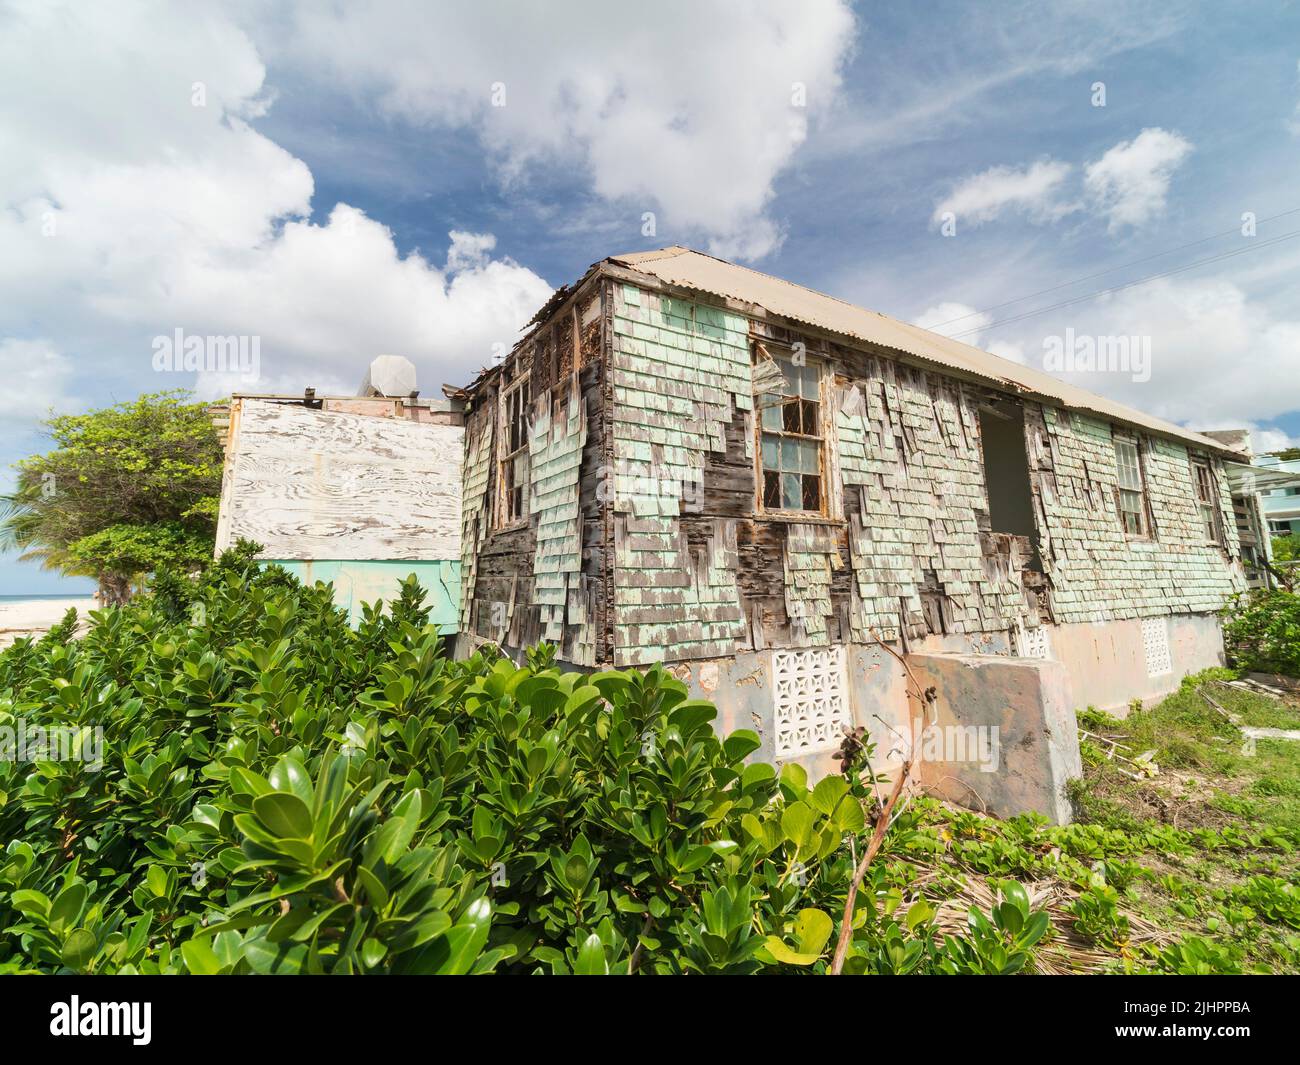 Barbados, isla caribeña - costa oeste. Rockley. Antigua propiedad en mal estado con paredes de guijarros de madera y ventanas de guijarros. Foto de stock